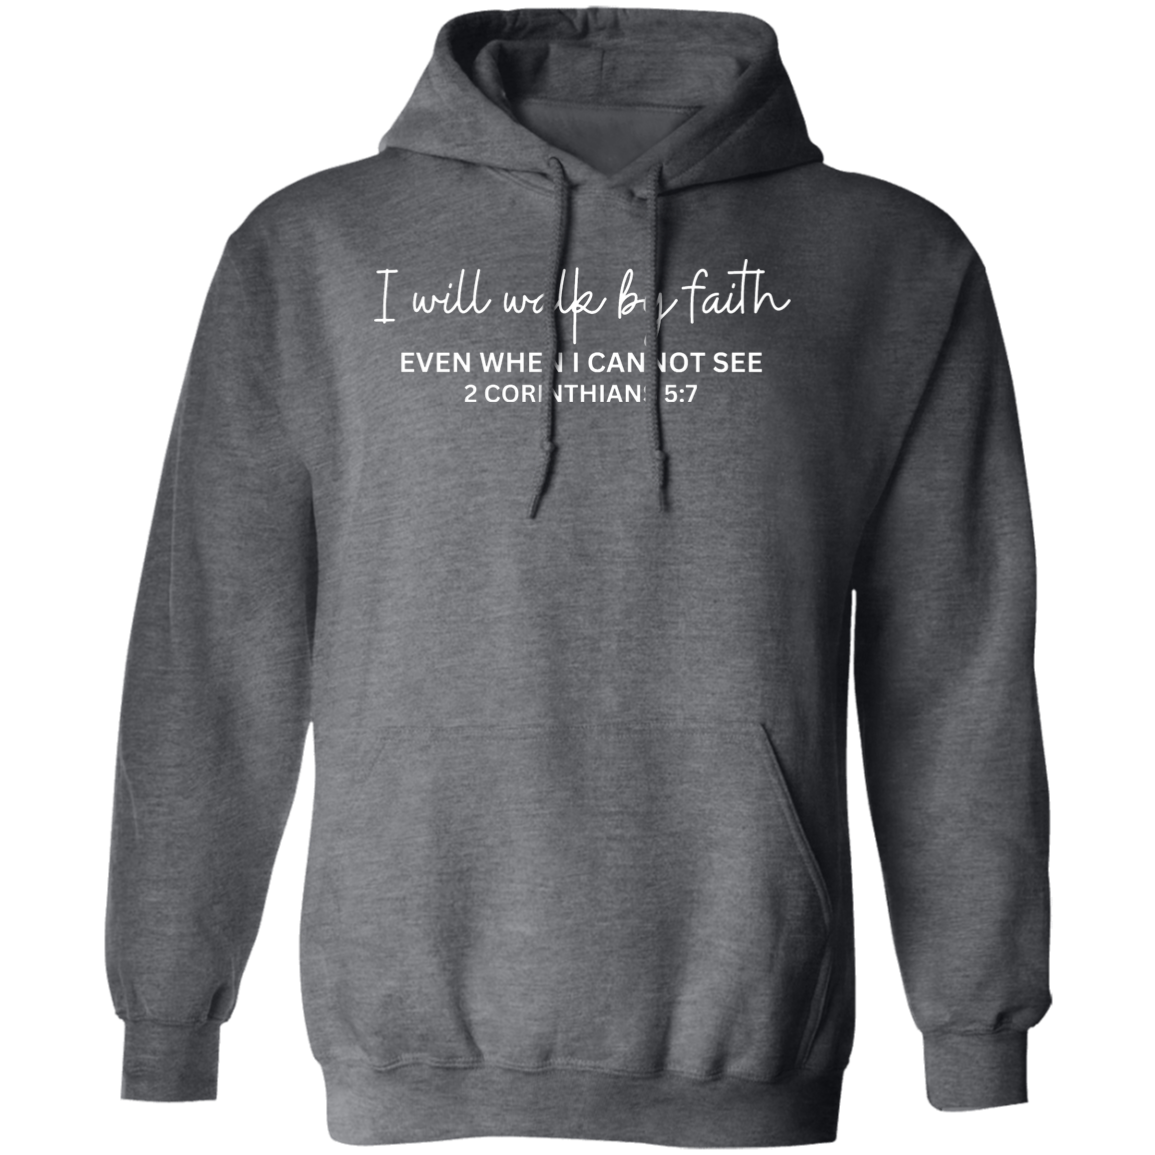 I Will Walk By Faith Unisex Pullover Hoodie Adult - Faith Hoodie - Faith Gifts